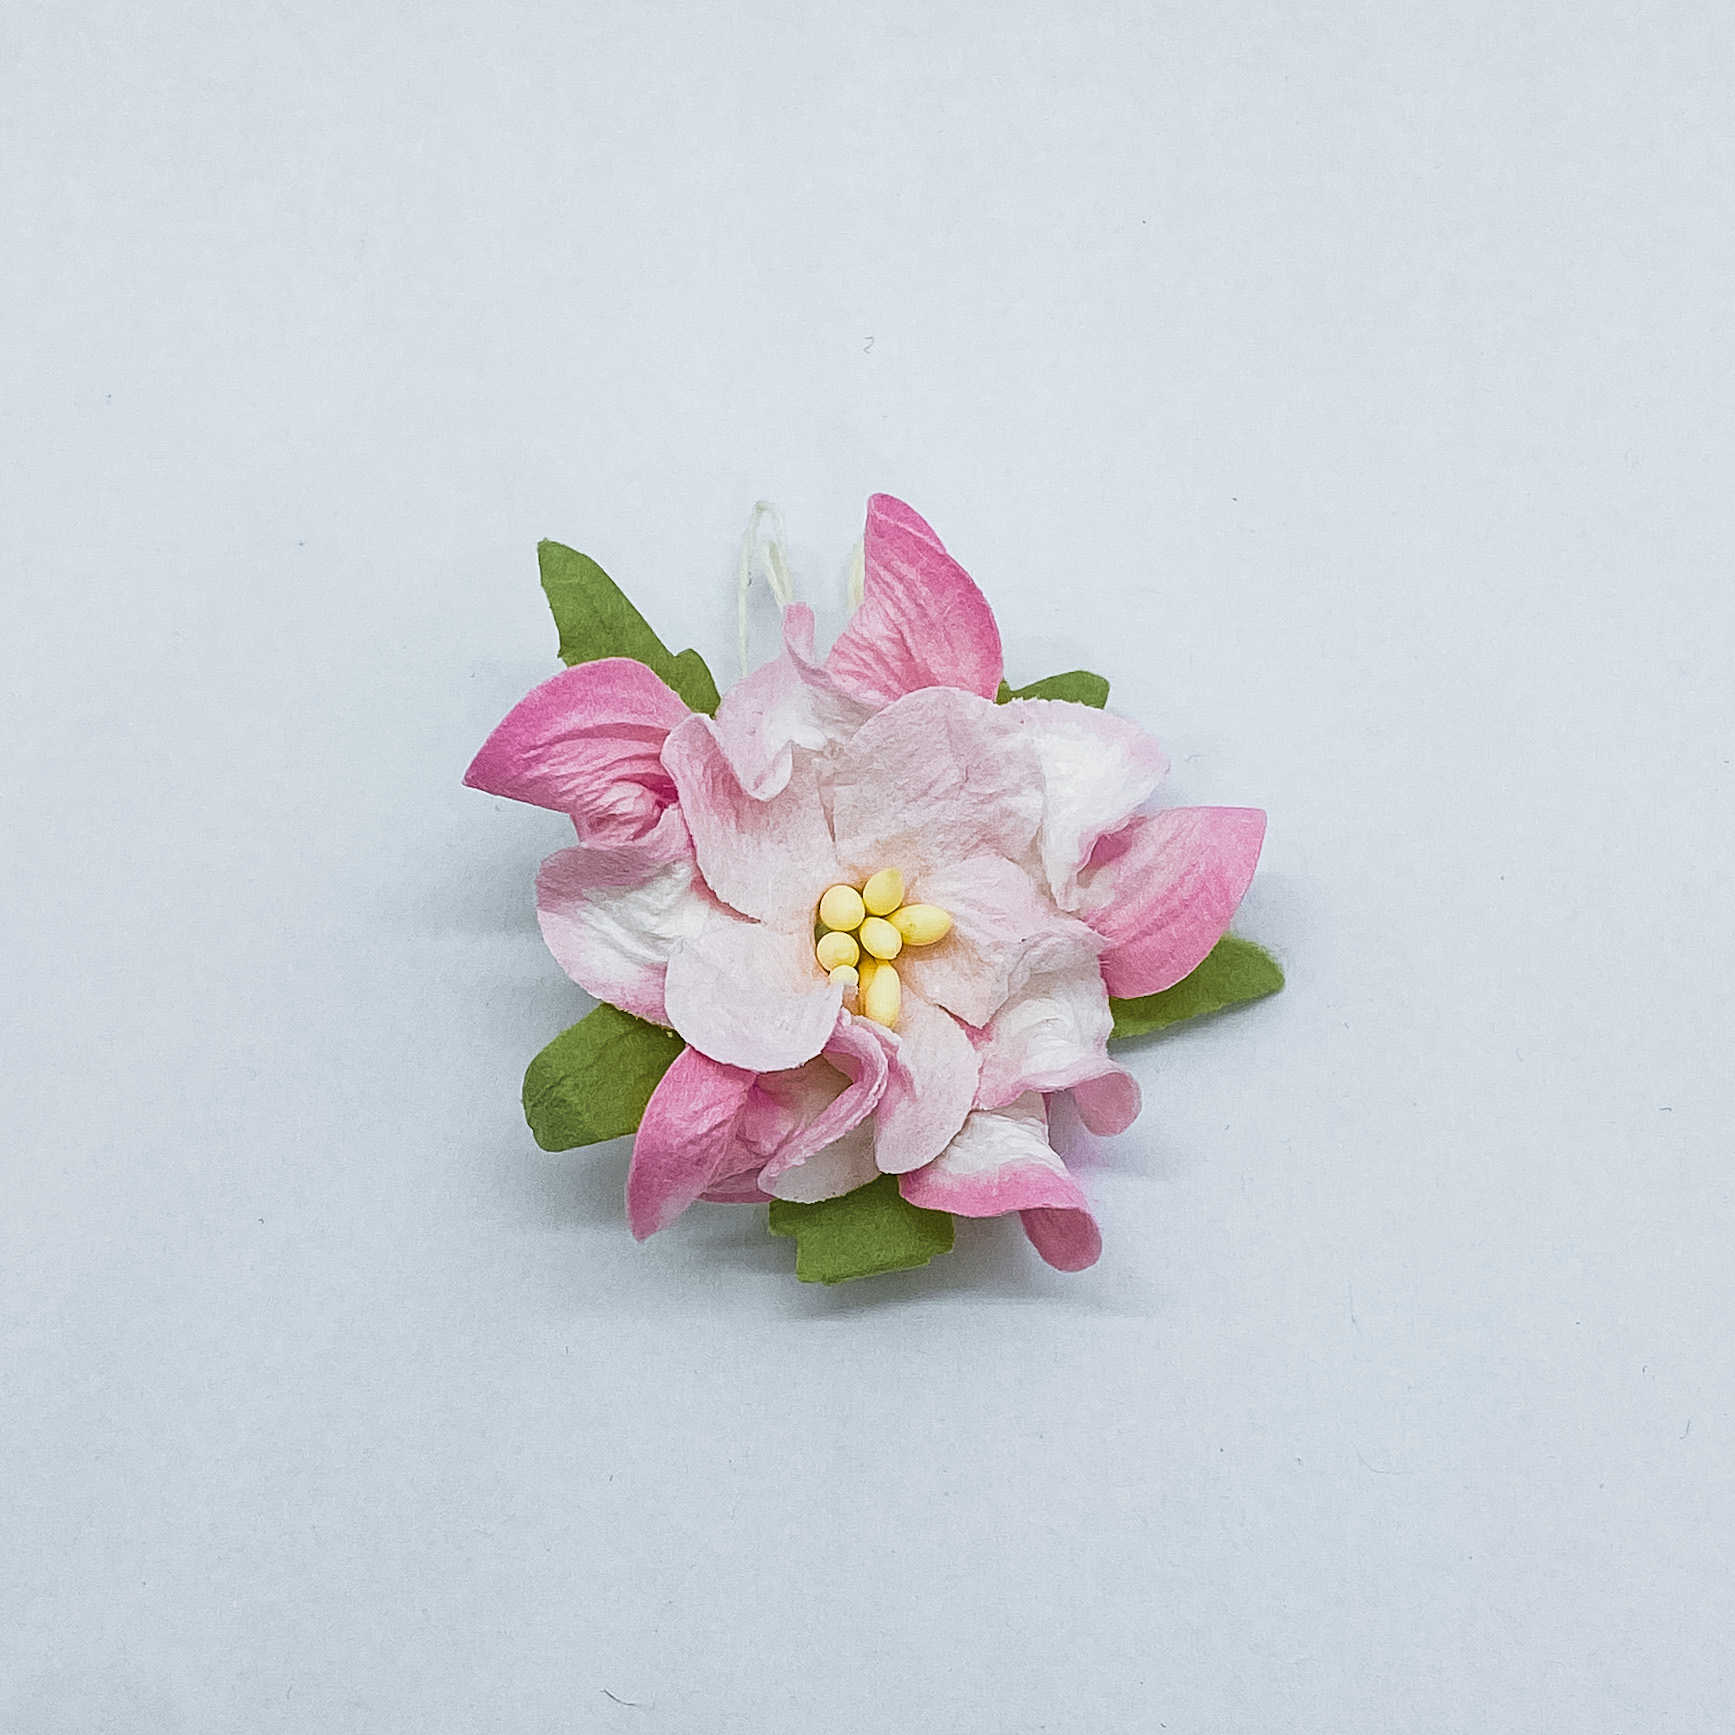 Цветок гардении нежно розового цвета, 1 шт, 4 см